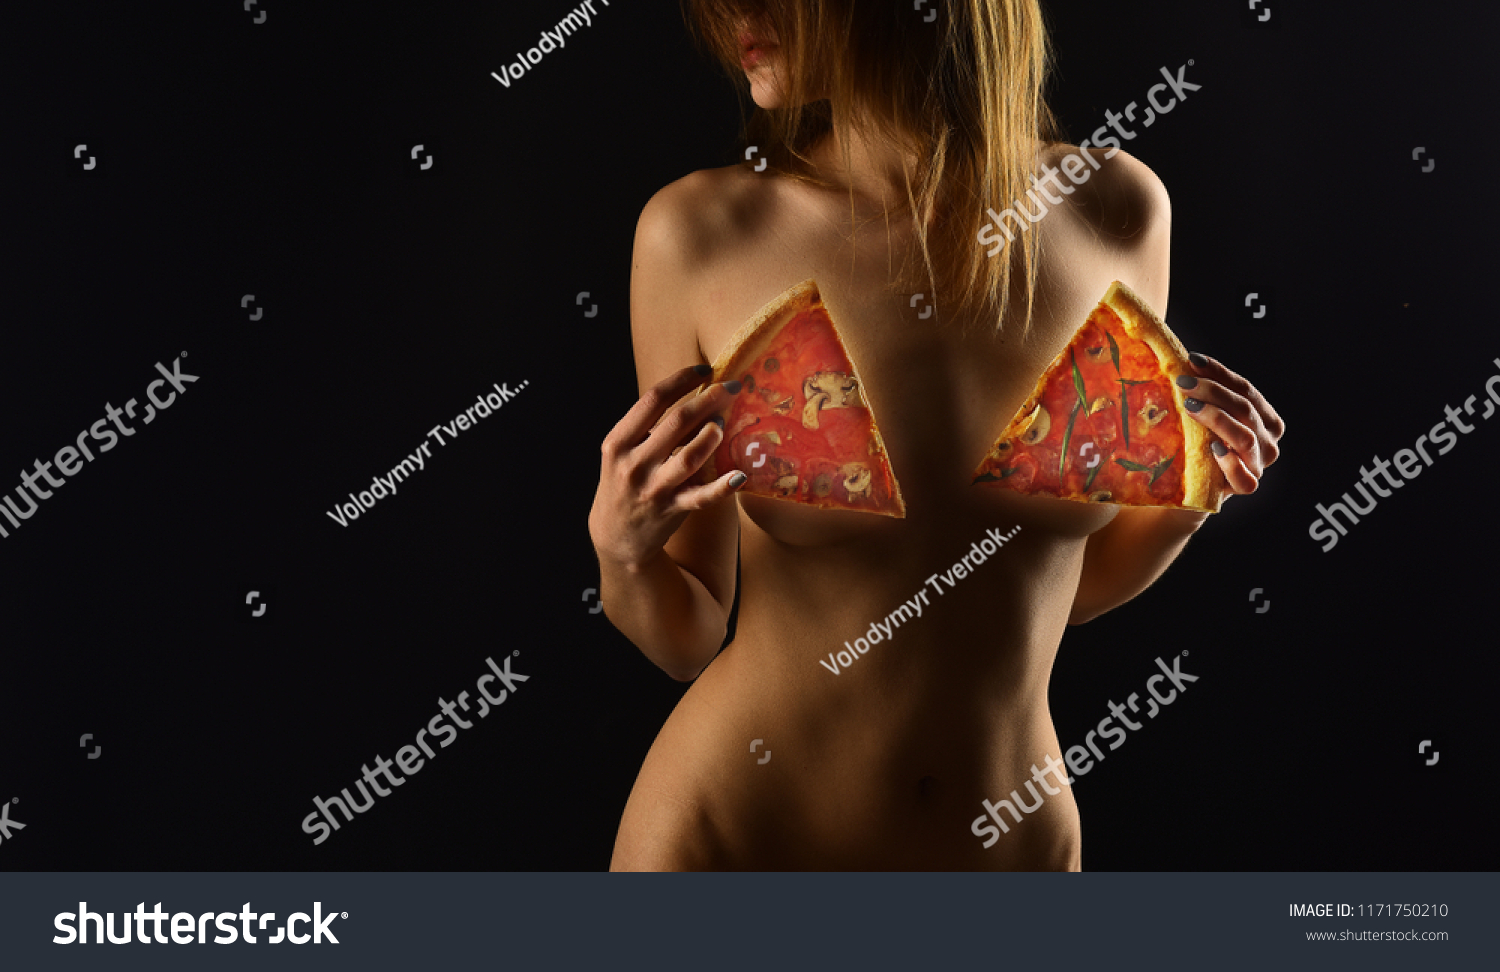 Girl nude pizza NakedPizzaDelivery